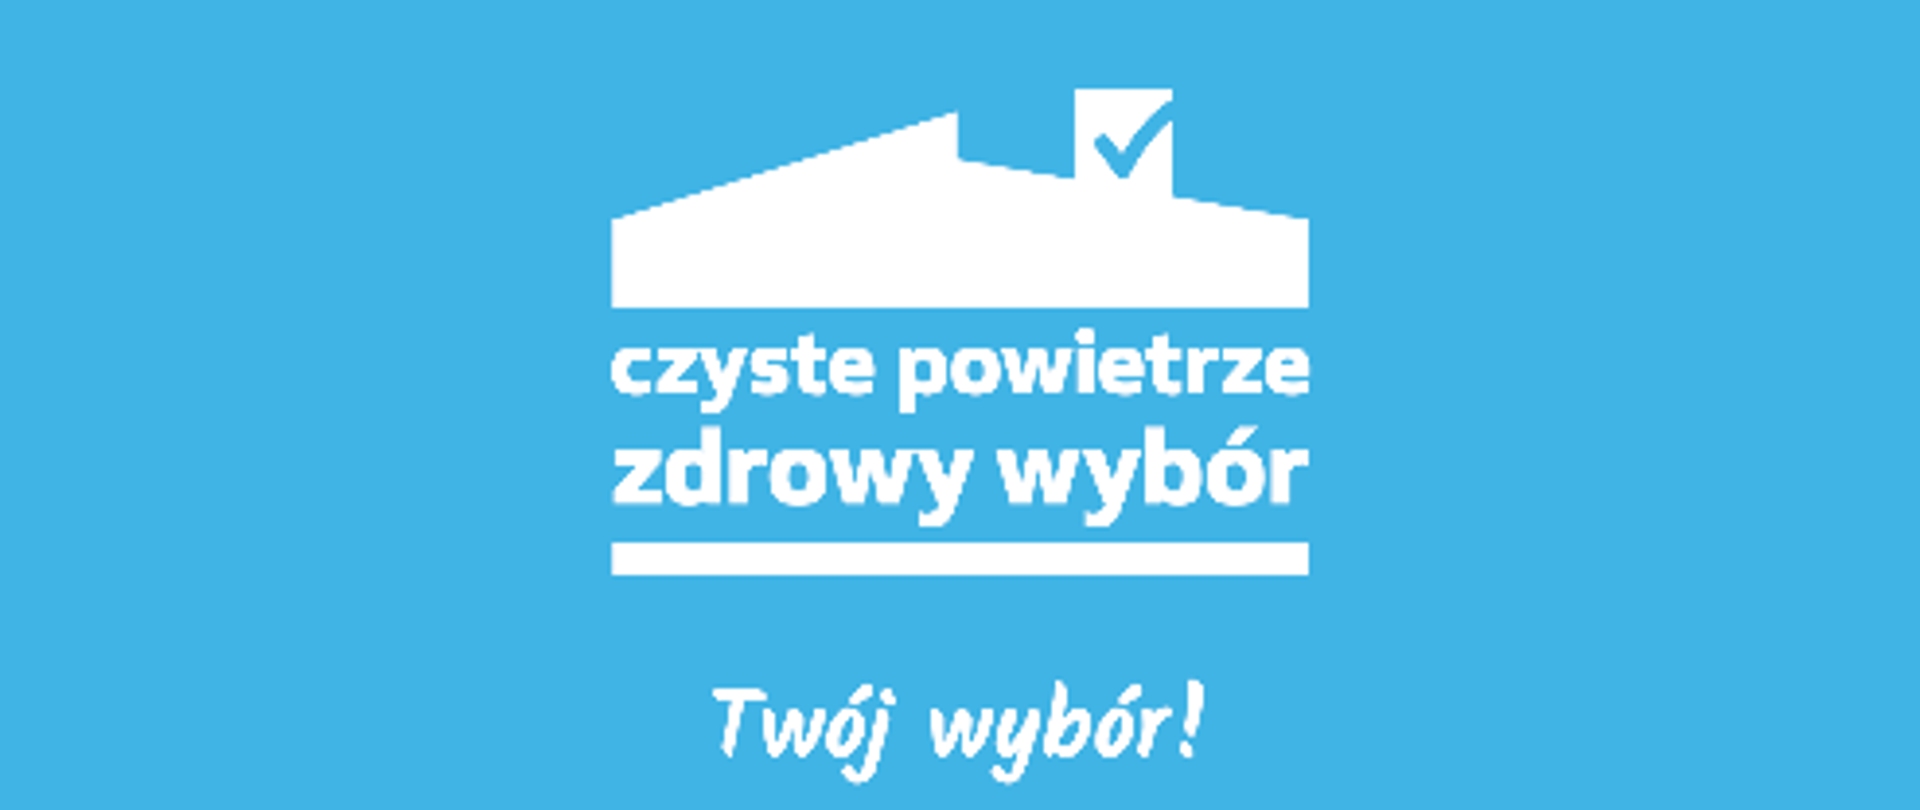 Logotyp czystego powietrza, biały dom na niebieskim tle. Czyste powietrze - zdrowy wybór. Twój wybór!